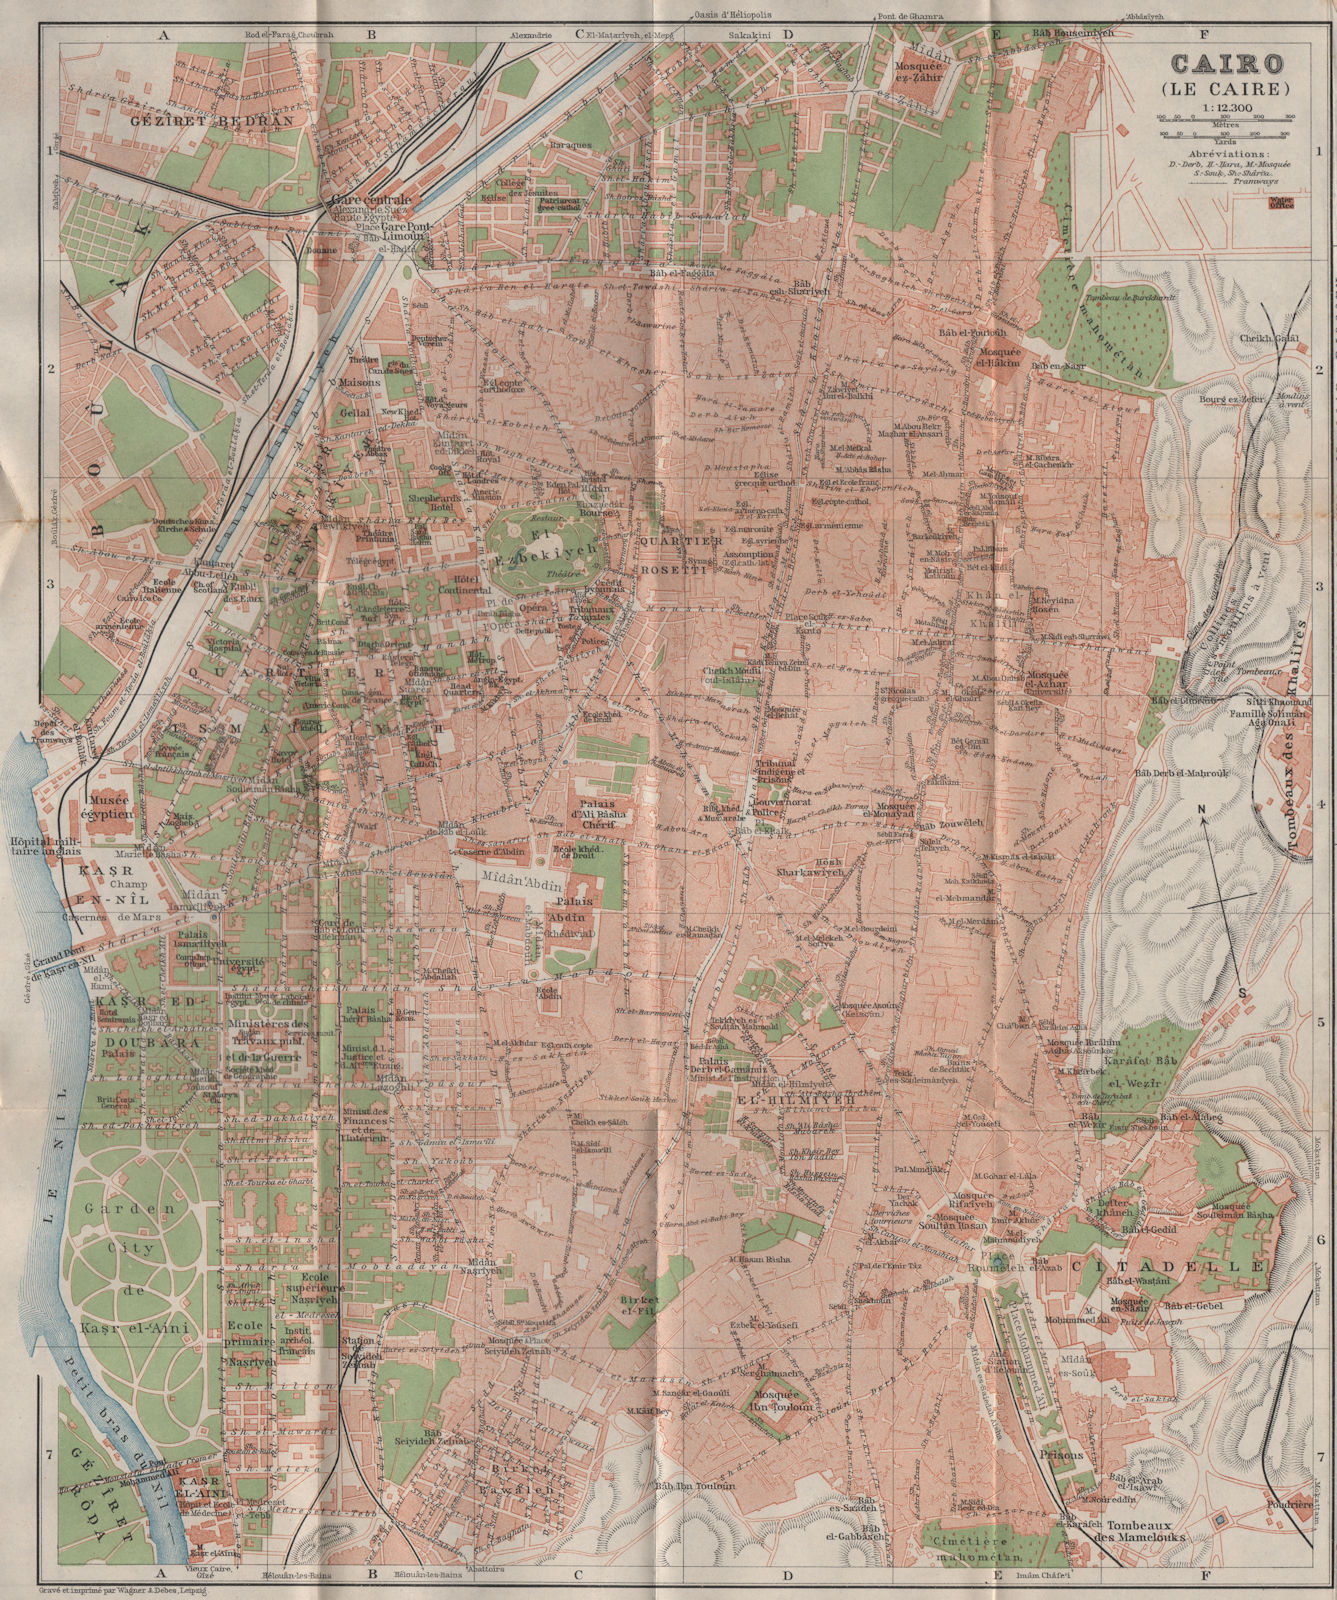 CAIRO / LE CAIRE antique town city plan. Egypt. BAEDEKER 1911 old map